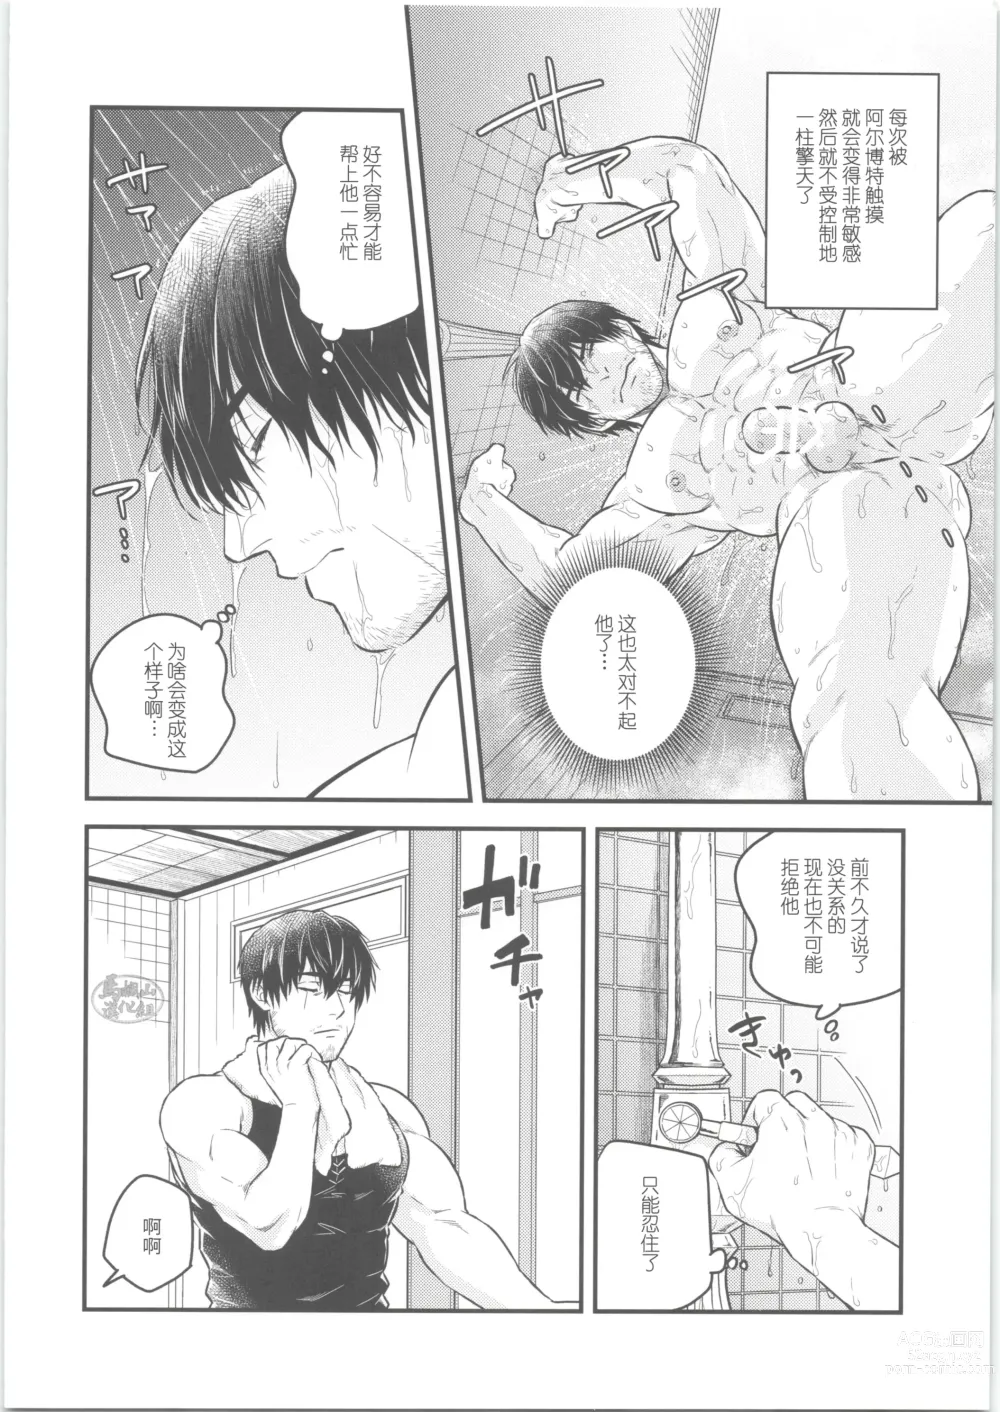 Page 7 of doujinshi Sonzai no Shoumei